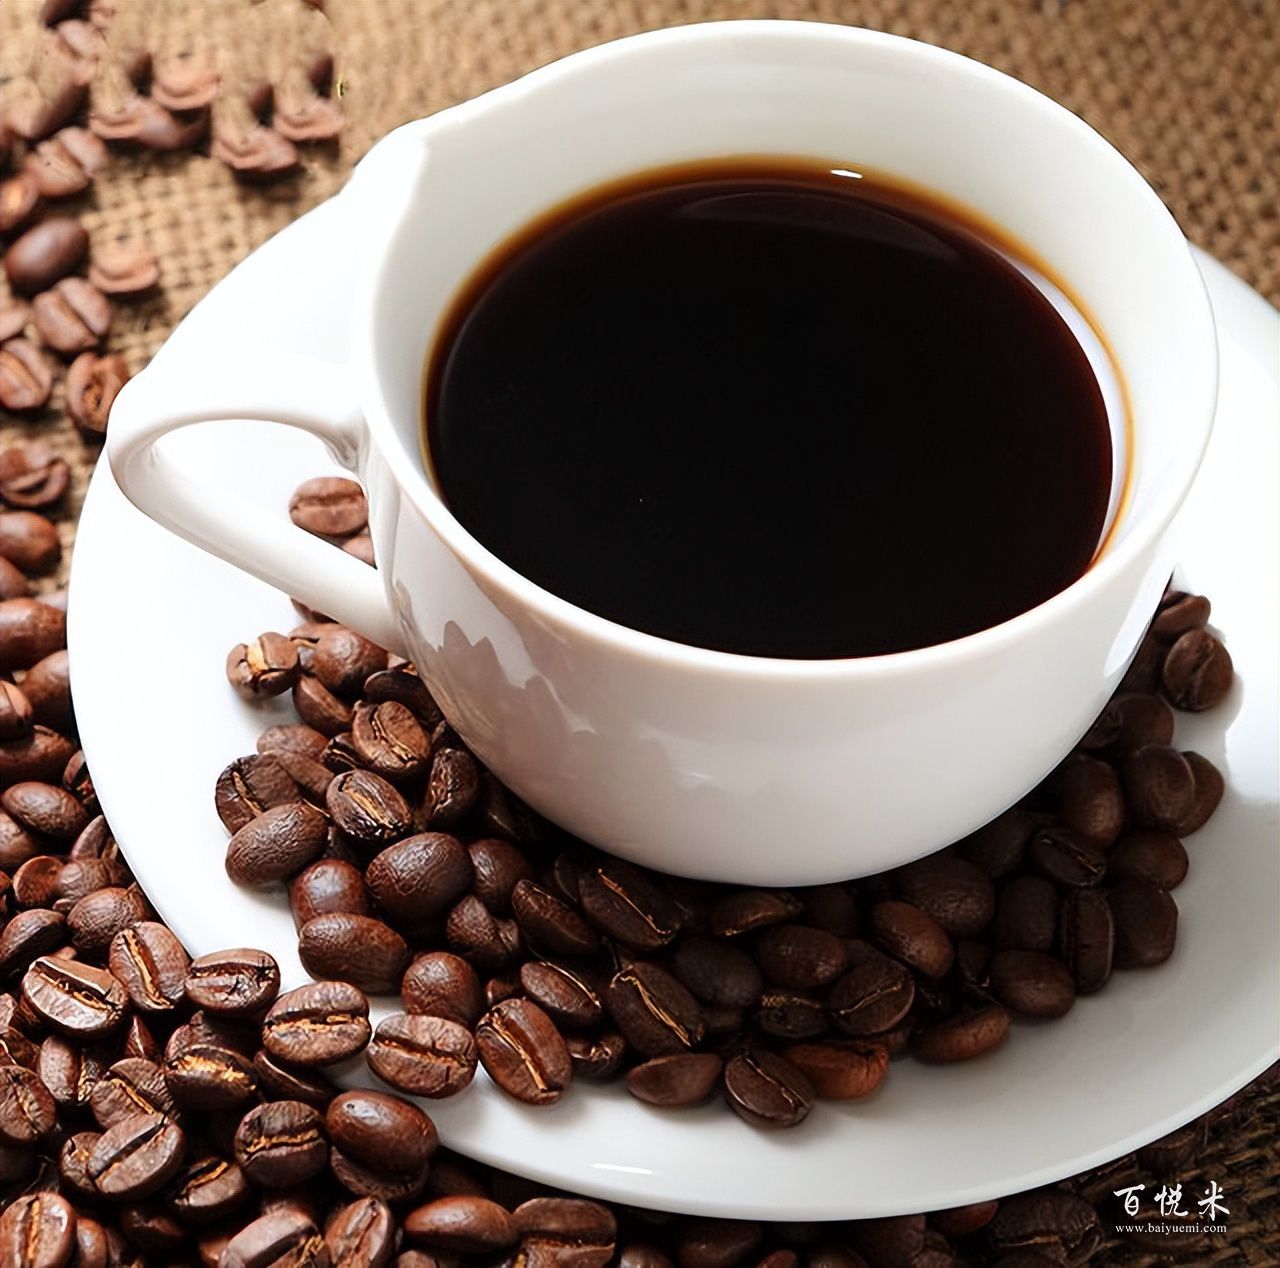 咖啡界的爱马仕——瑰夏，为什么能成为世界上最贵的咖啡？